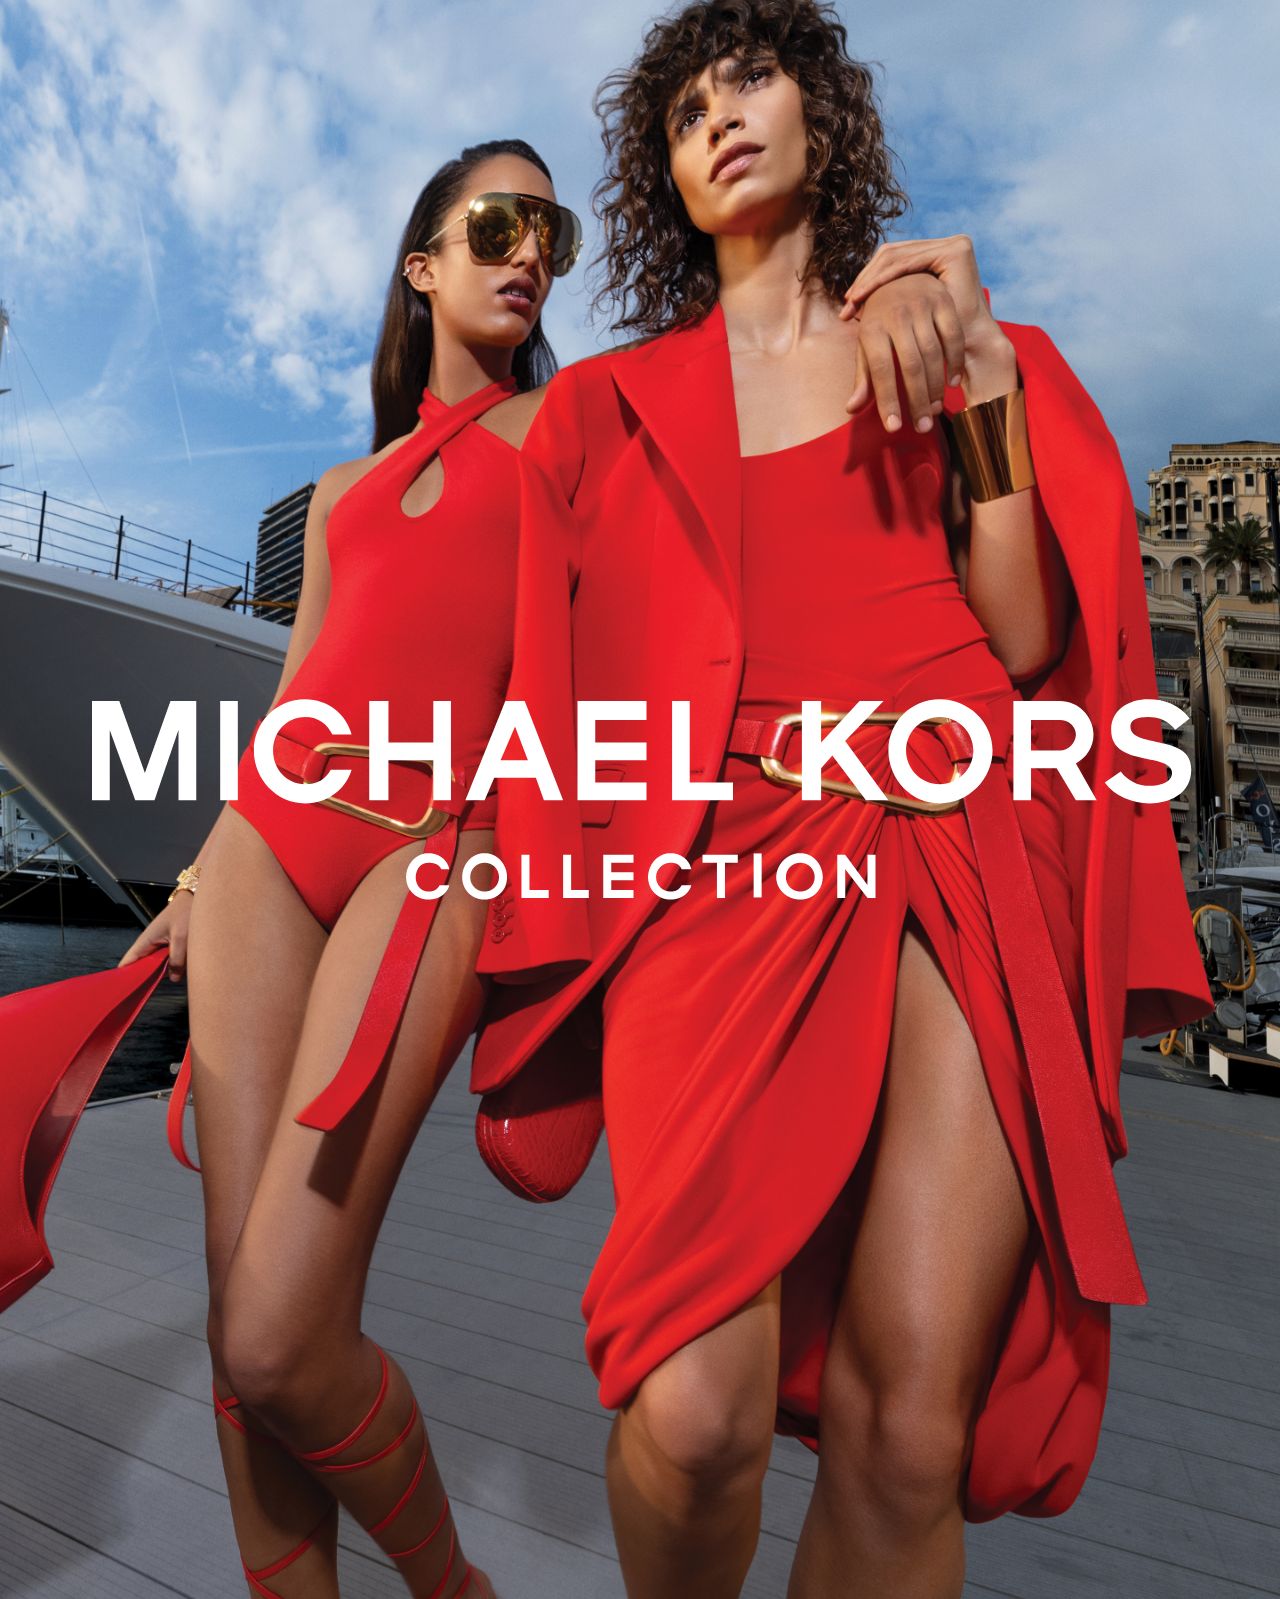 Bolsos, zapatos, ropa y más artículos de diseño | Michael Kors